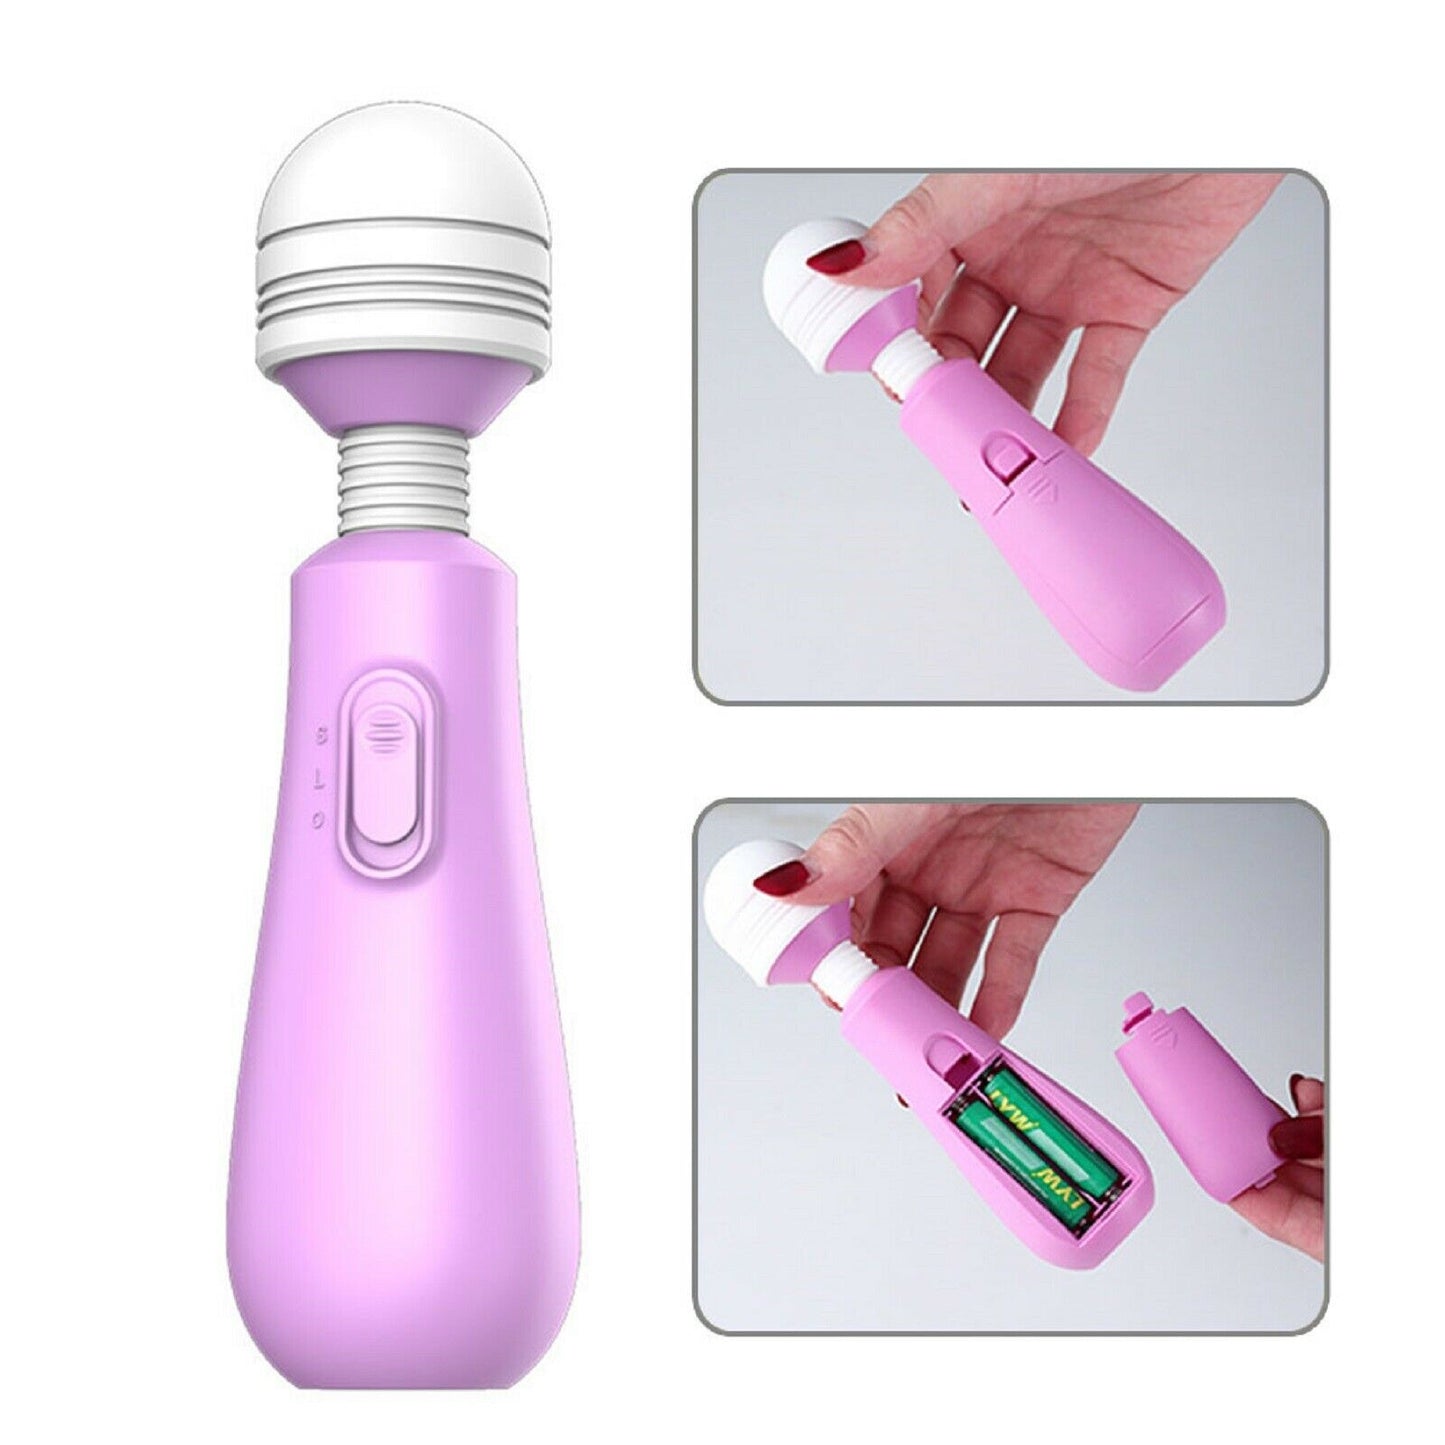 Mini Wand Vibrator G-Spot Dildo Clitoral Stimulator Clit Massager AV Sex Toy NEW